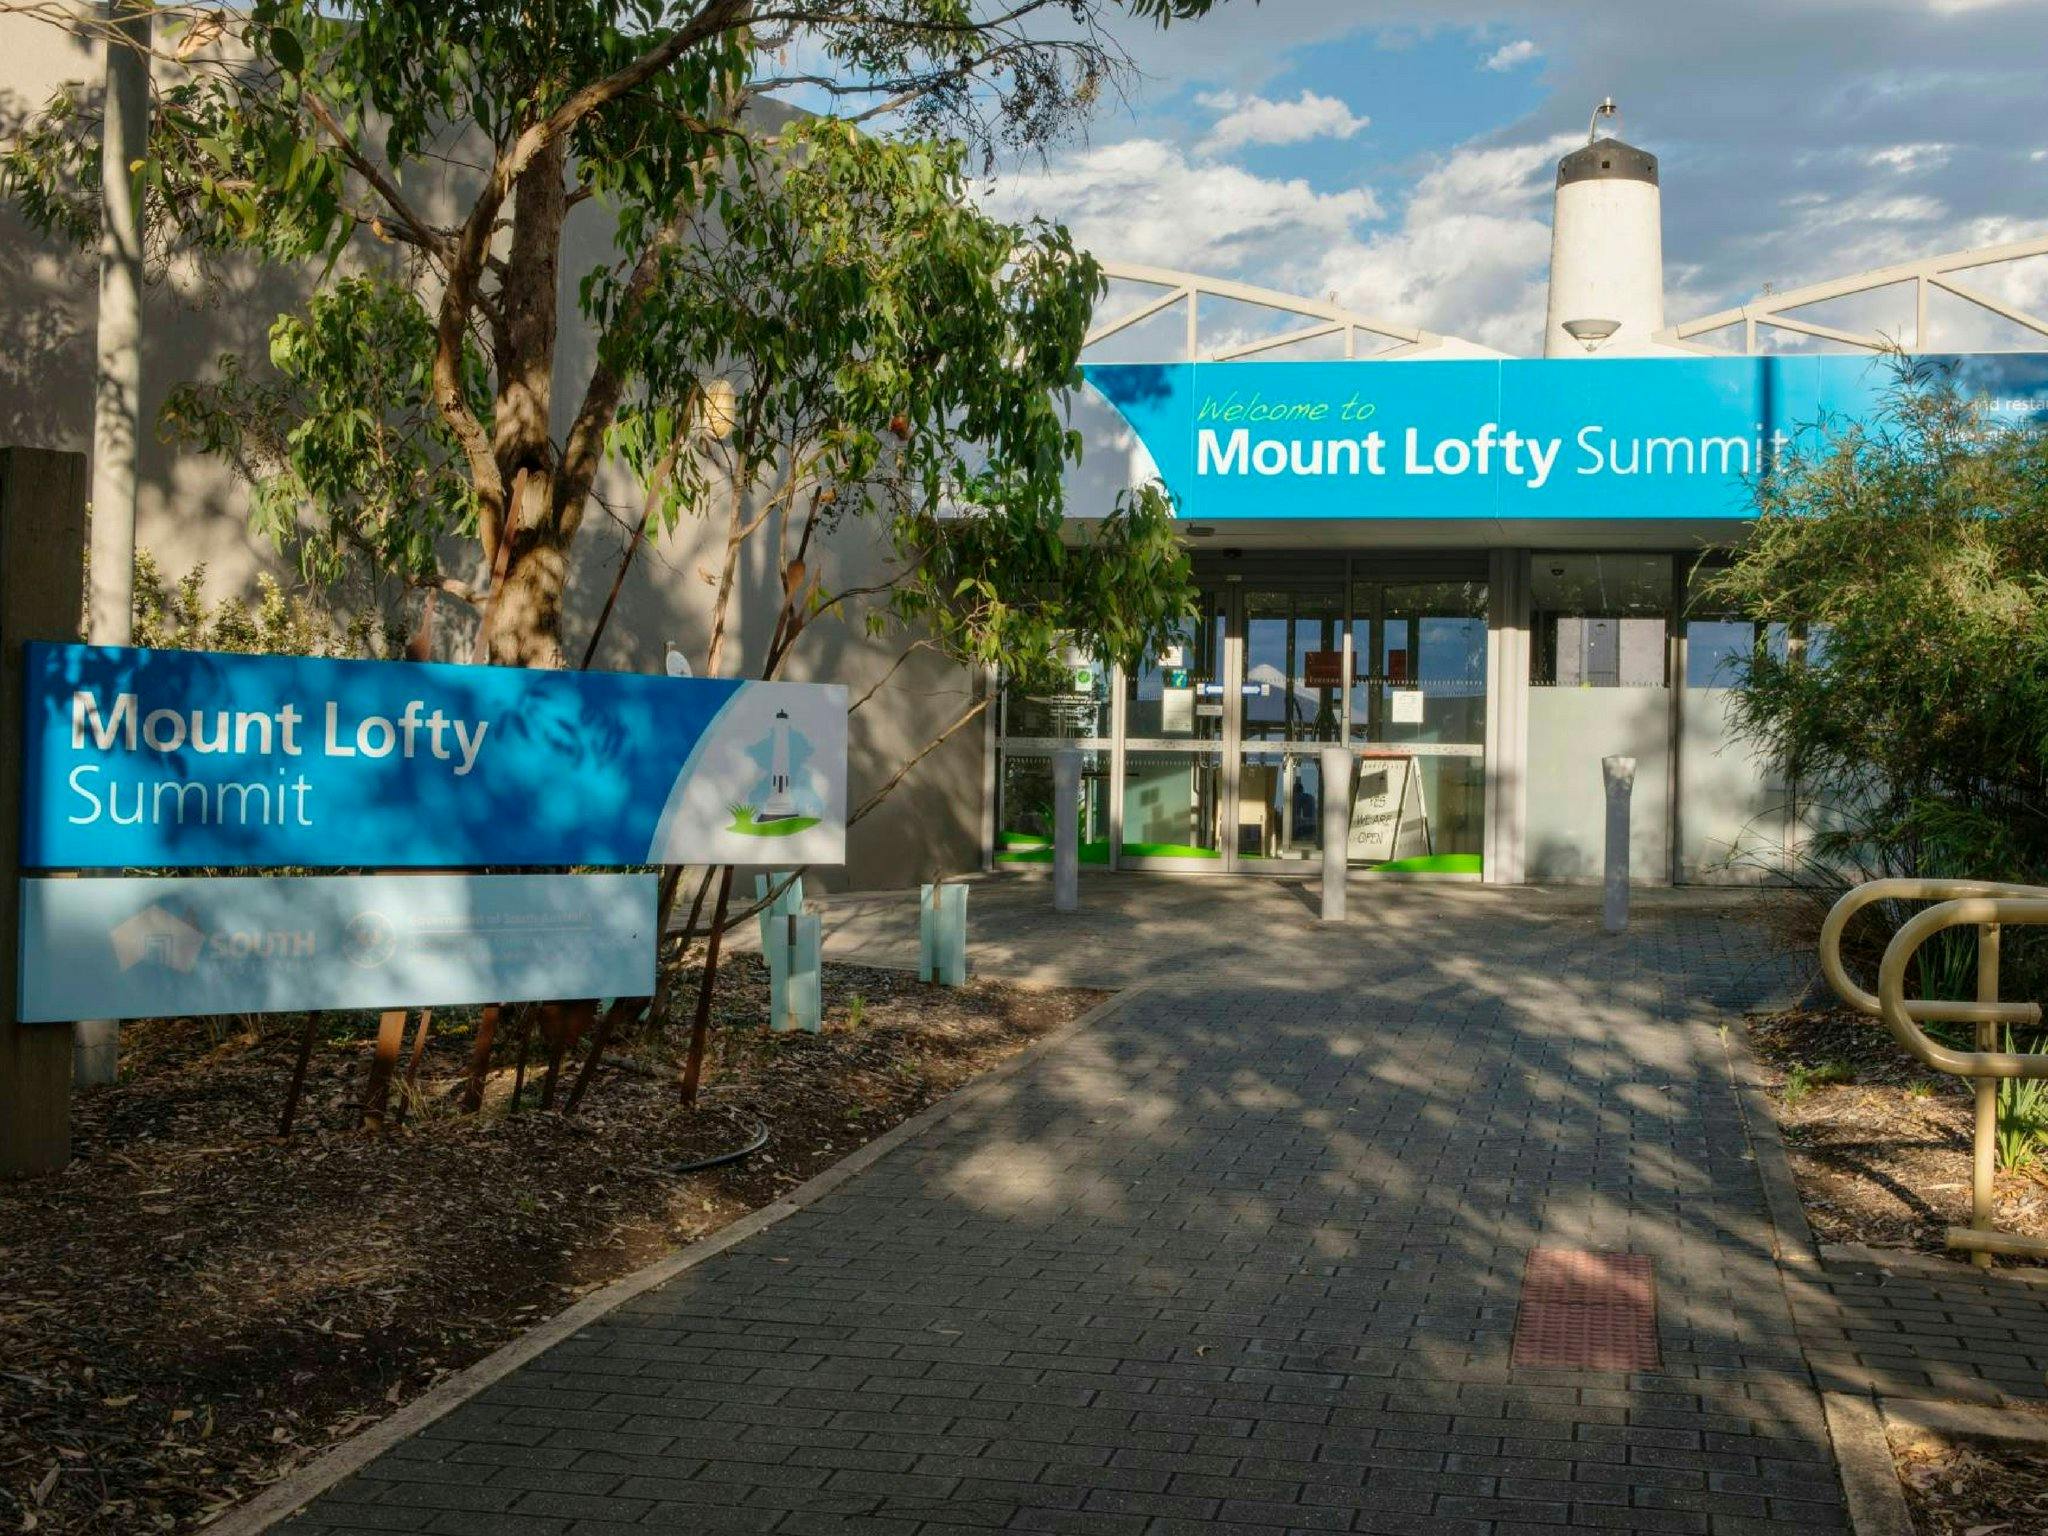 Mount Lofty Summit